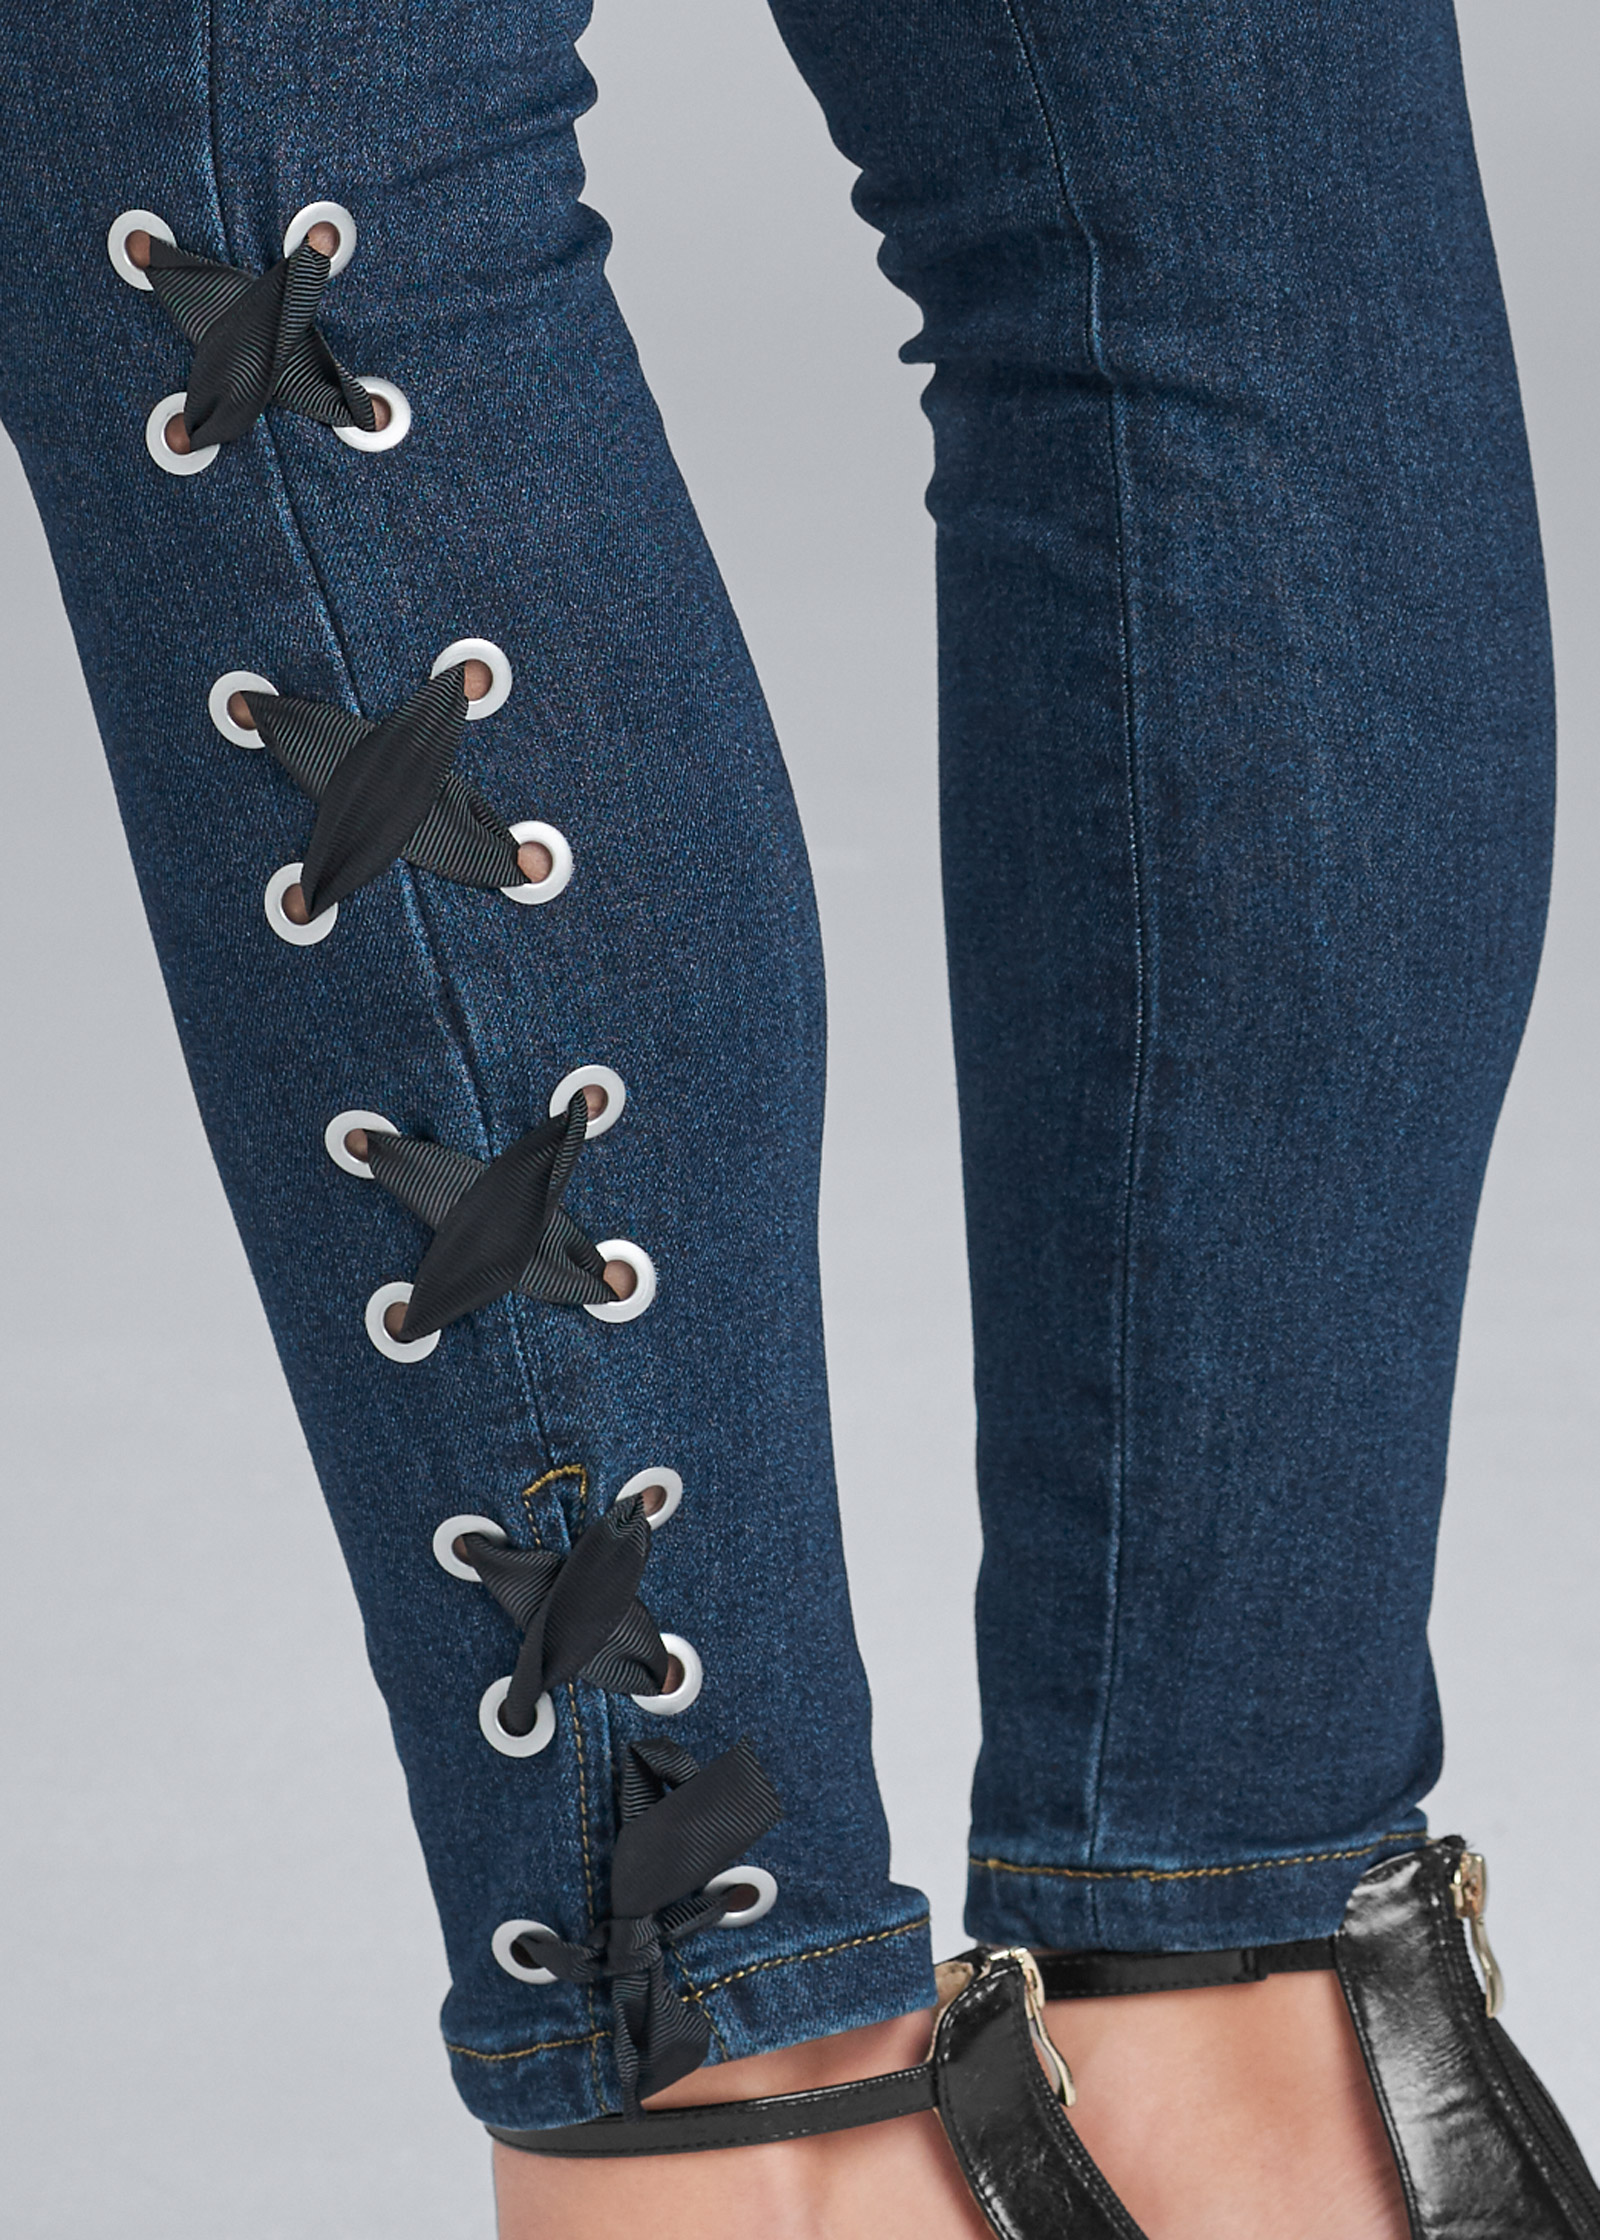 venus lace up jeans